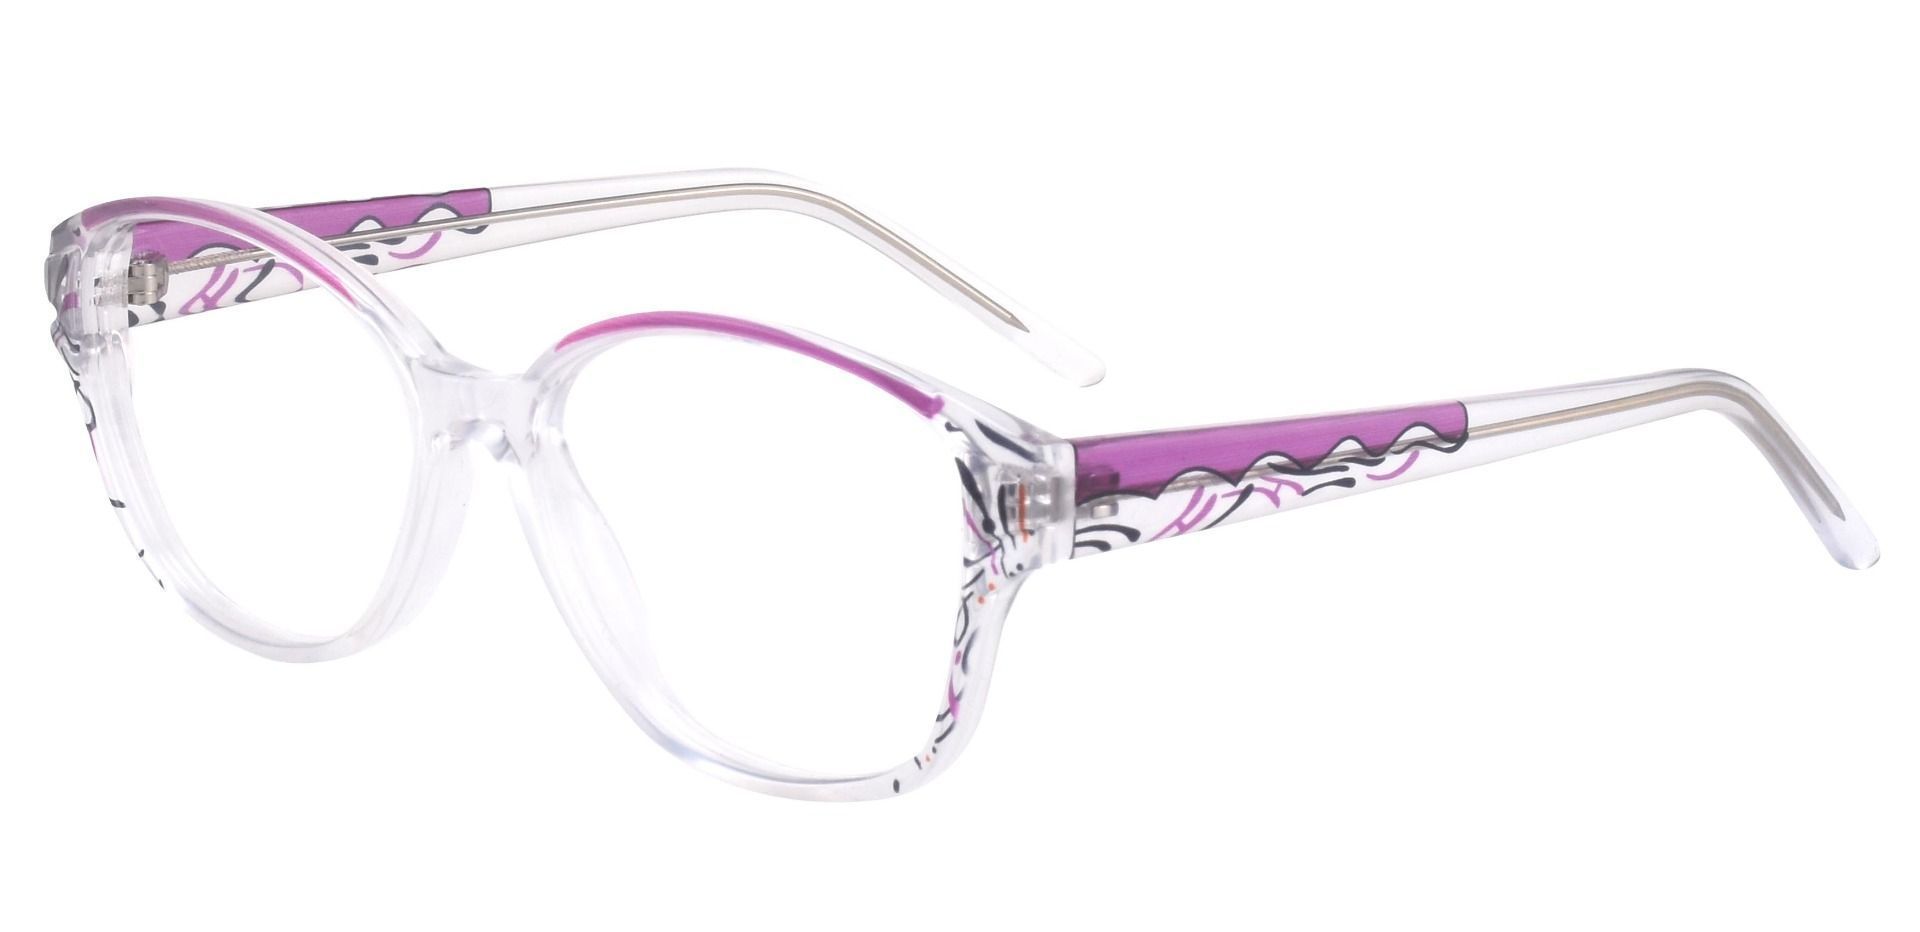 Price Oval Prescription Glasses - Purple